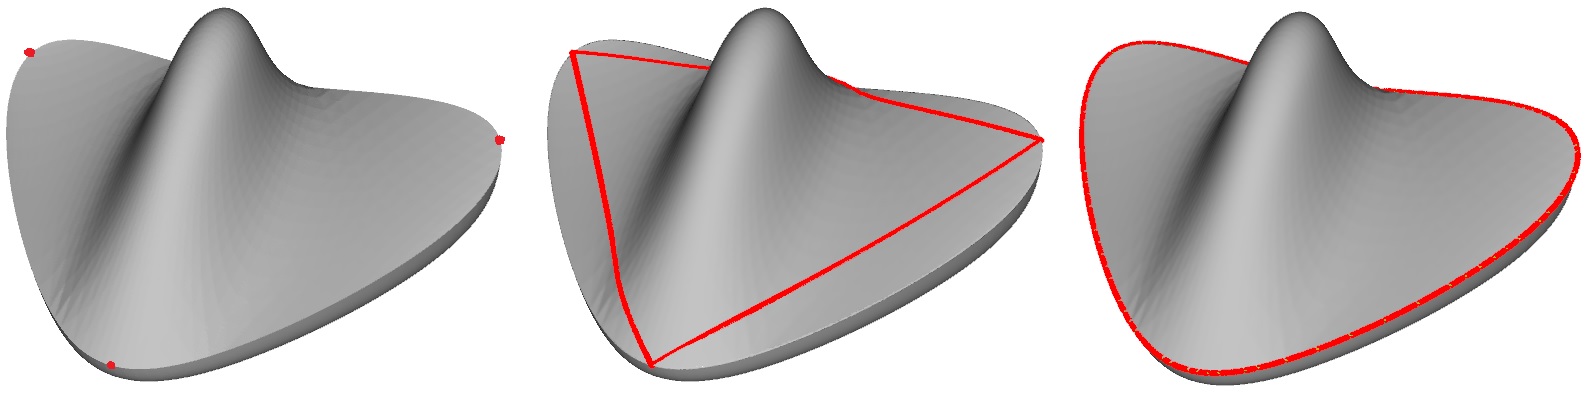 curvature_geodesics